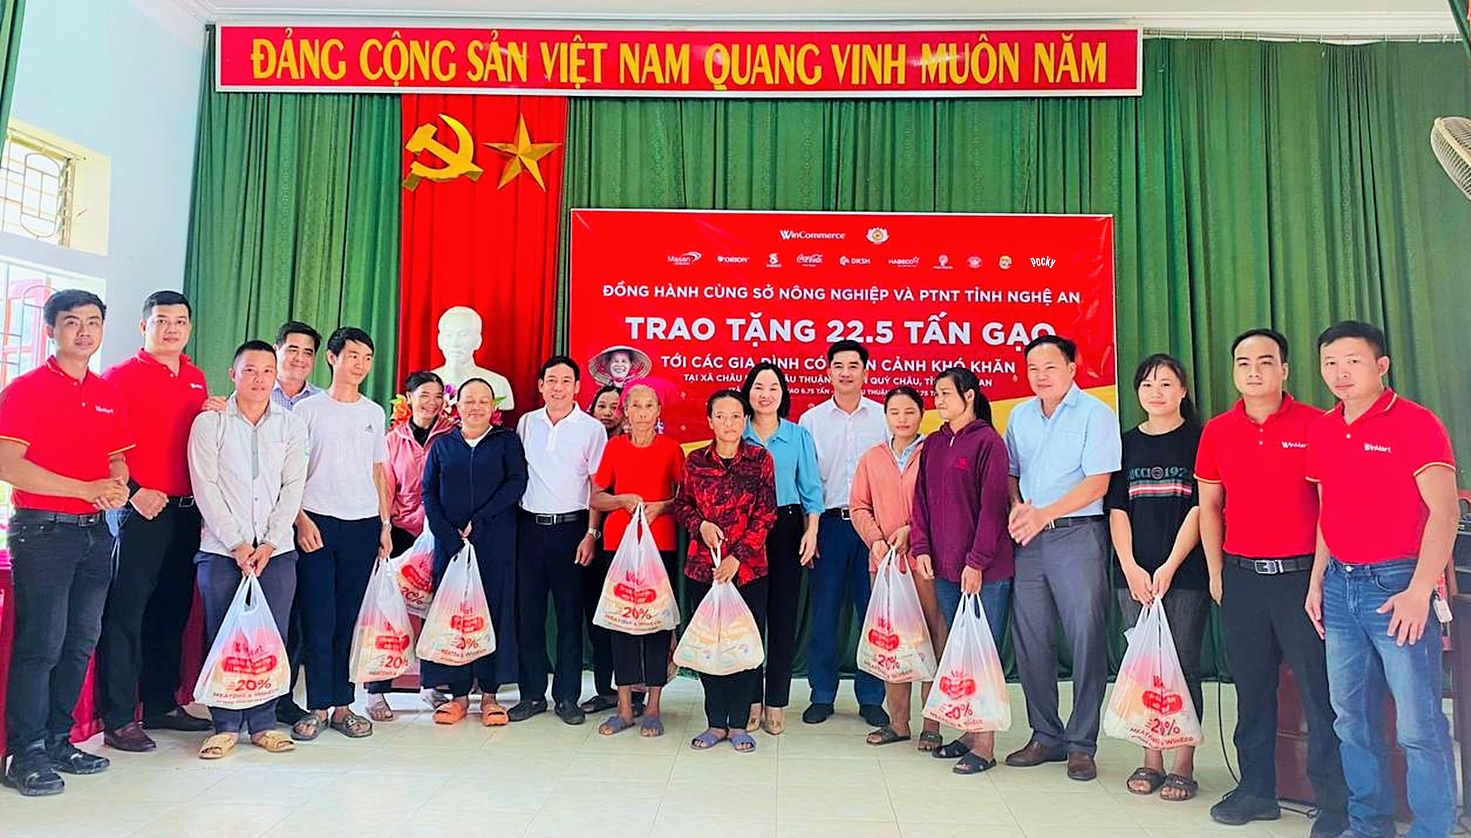 bna_ 1 WinCommerce trao tặng 22.5 tấn gạo đến các hộ gia đình có hoàn cảnh khó khăn tại tỉnh Nghệ An (2).png